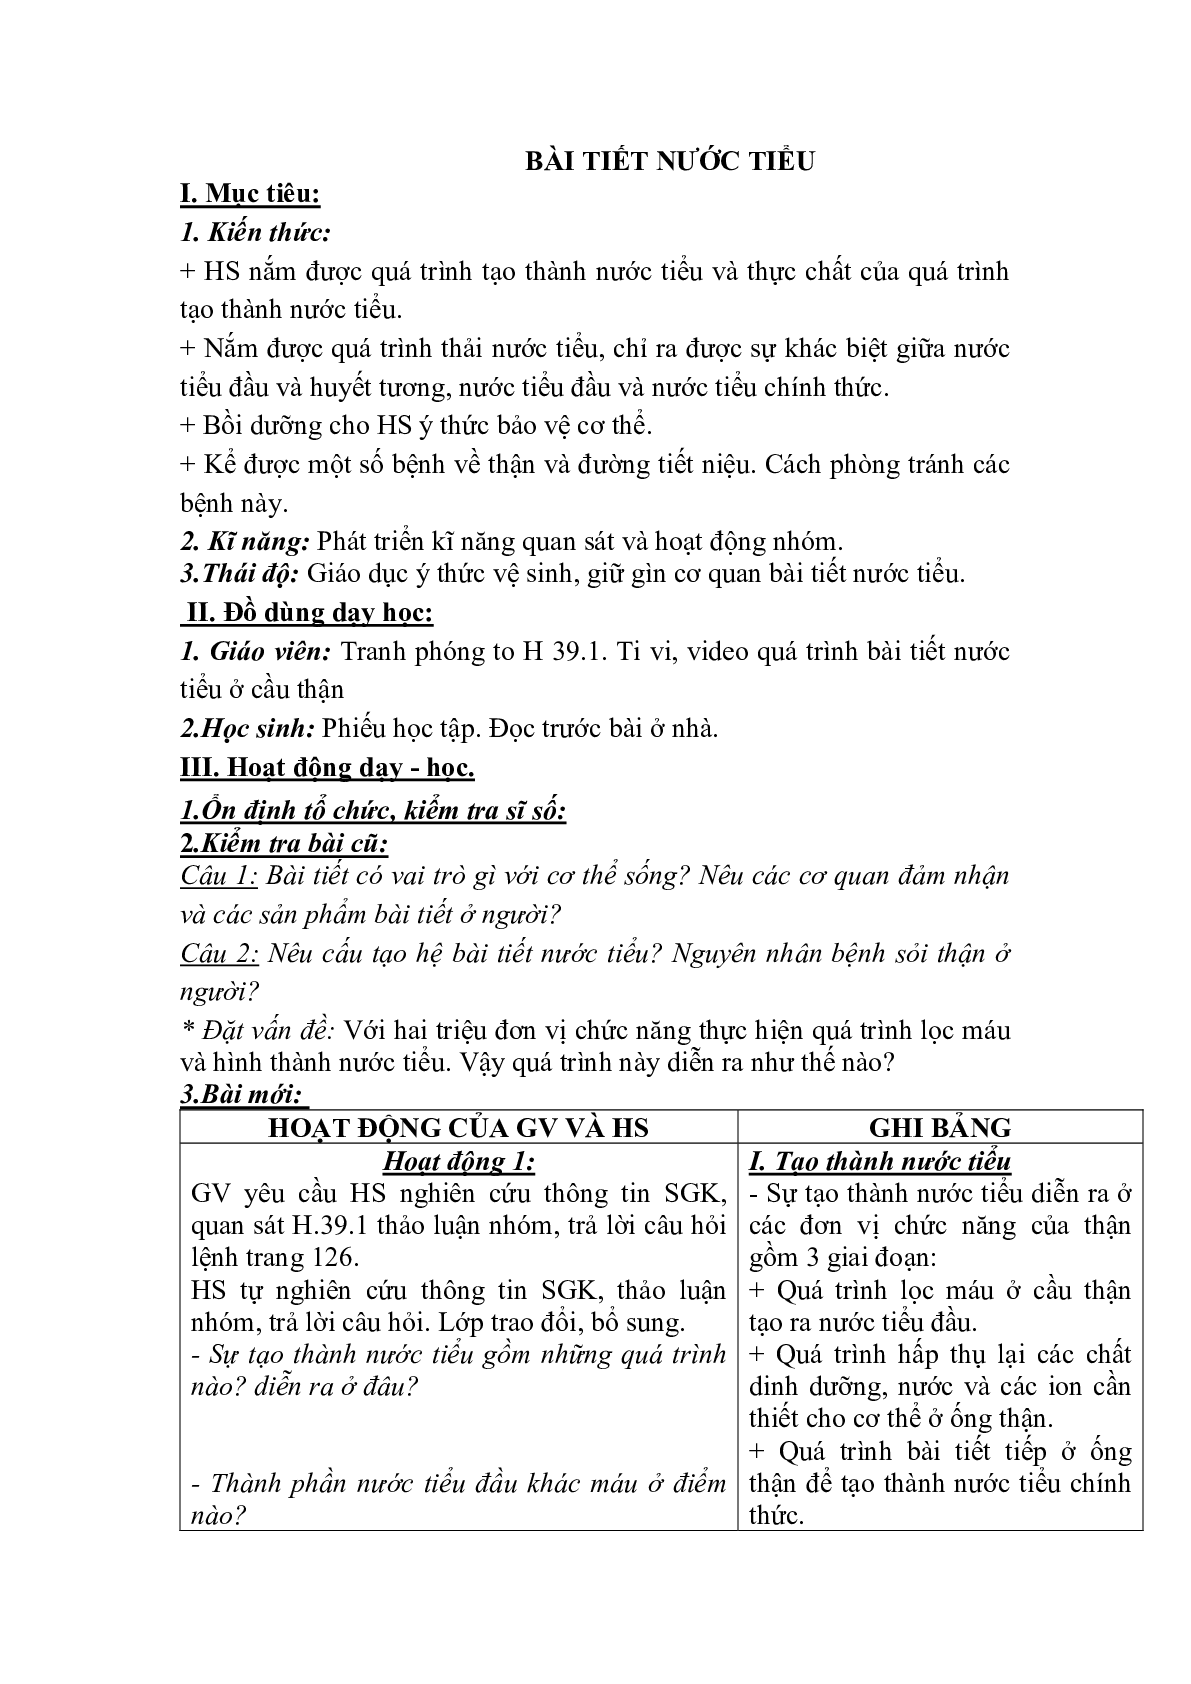 Giáo án Sinh học 8 Bài 39: Bài tiết nước tiểu mới, chuẩn nhất (trang 1)